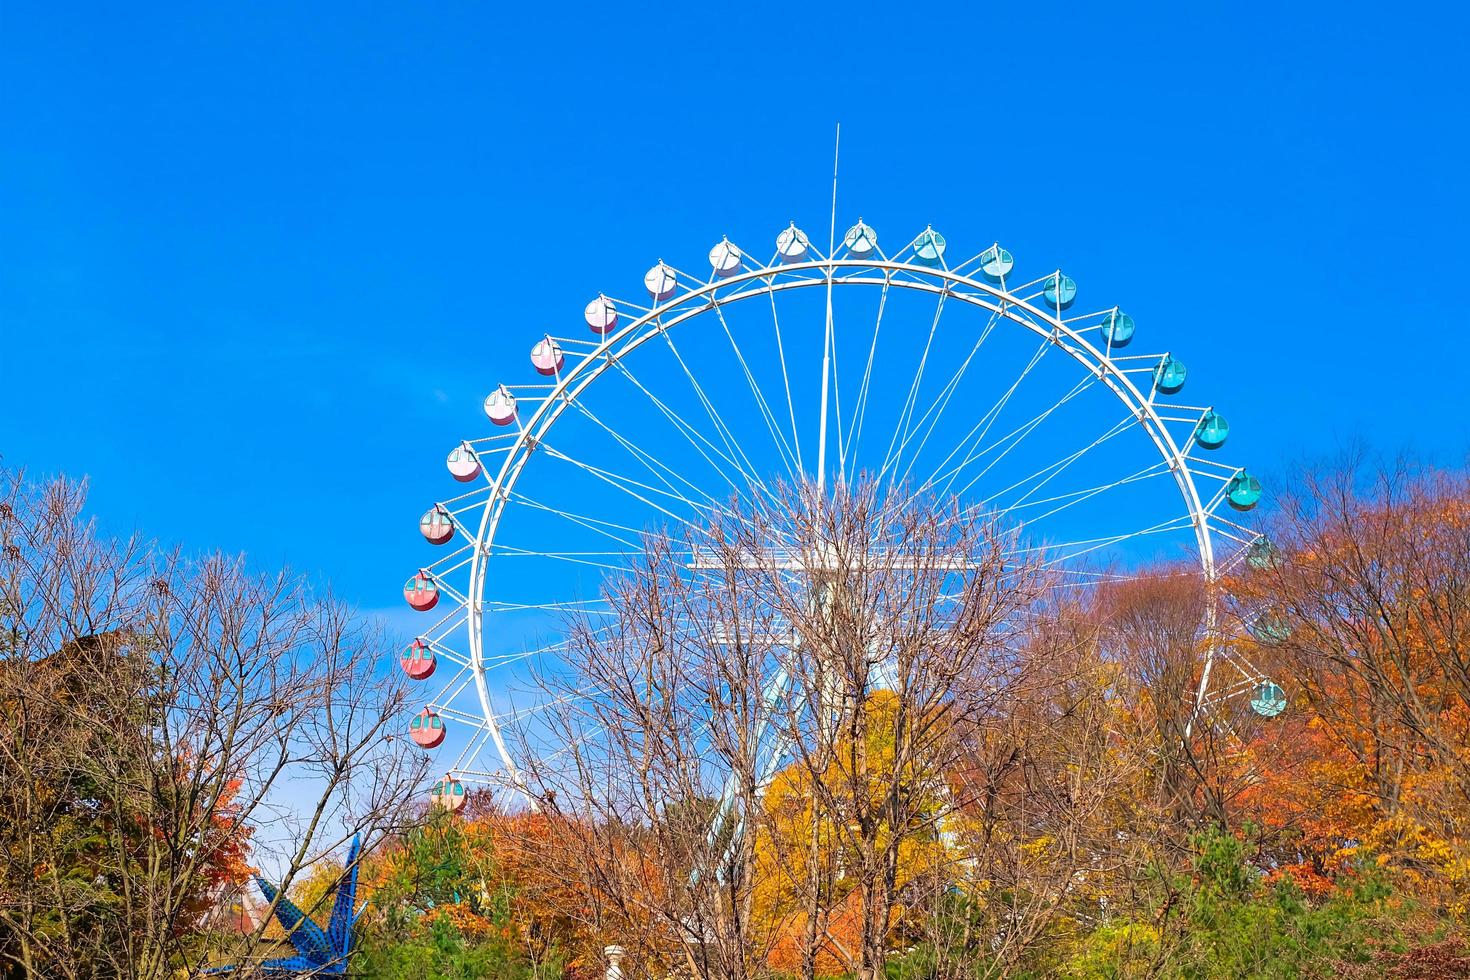 pariserhjul och nöjespark i everland sydkorea. foto